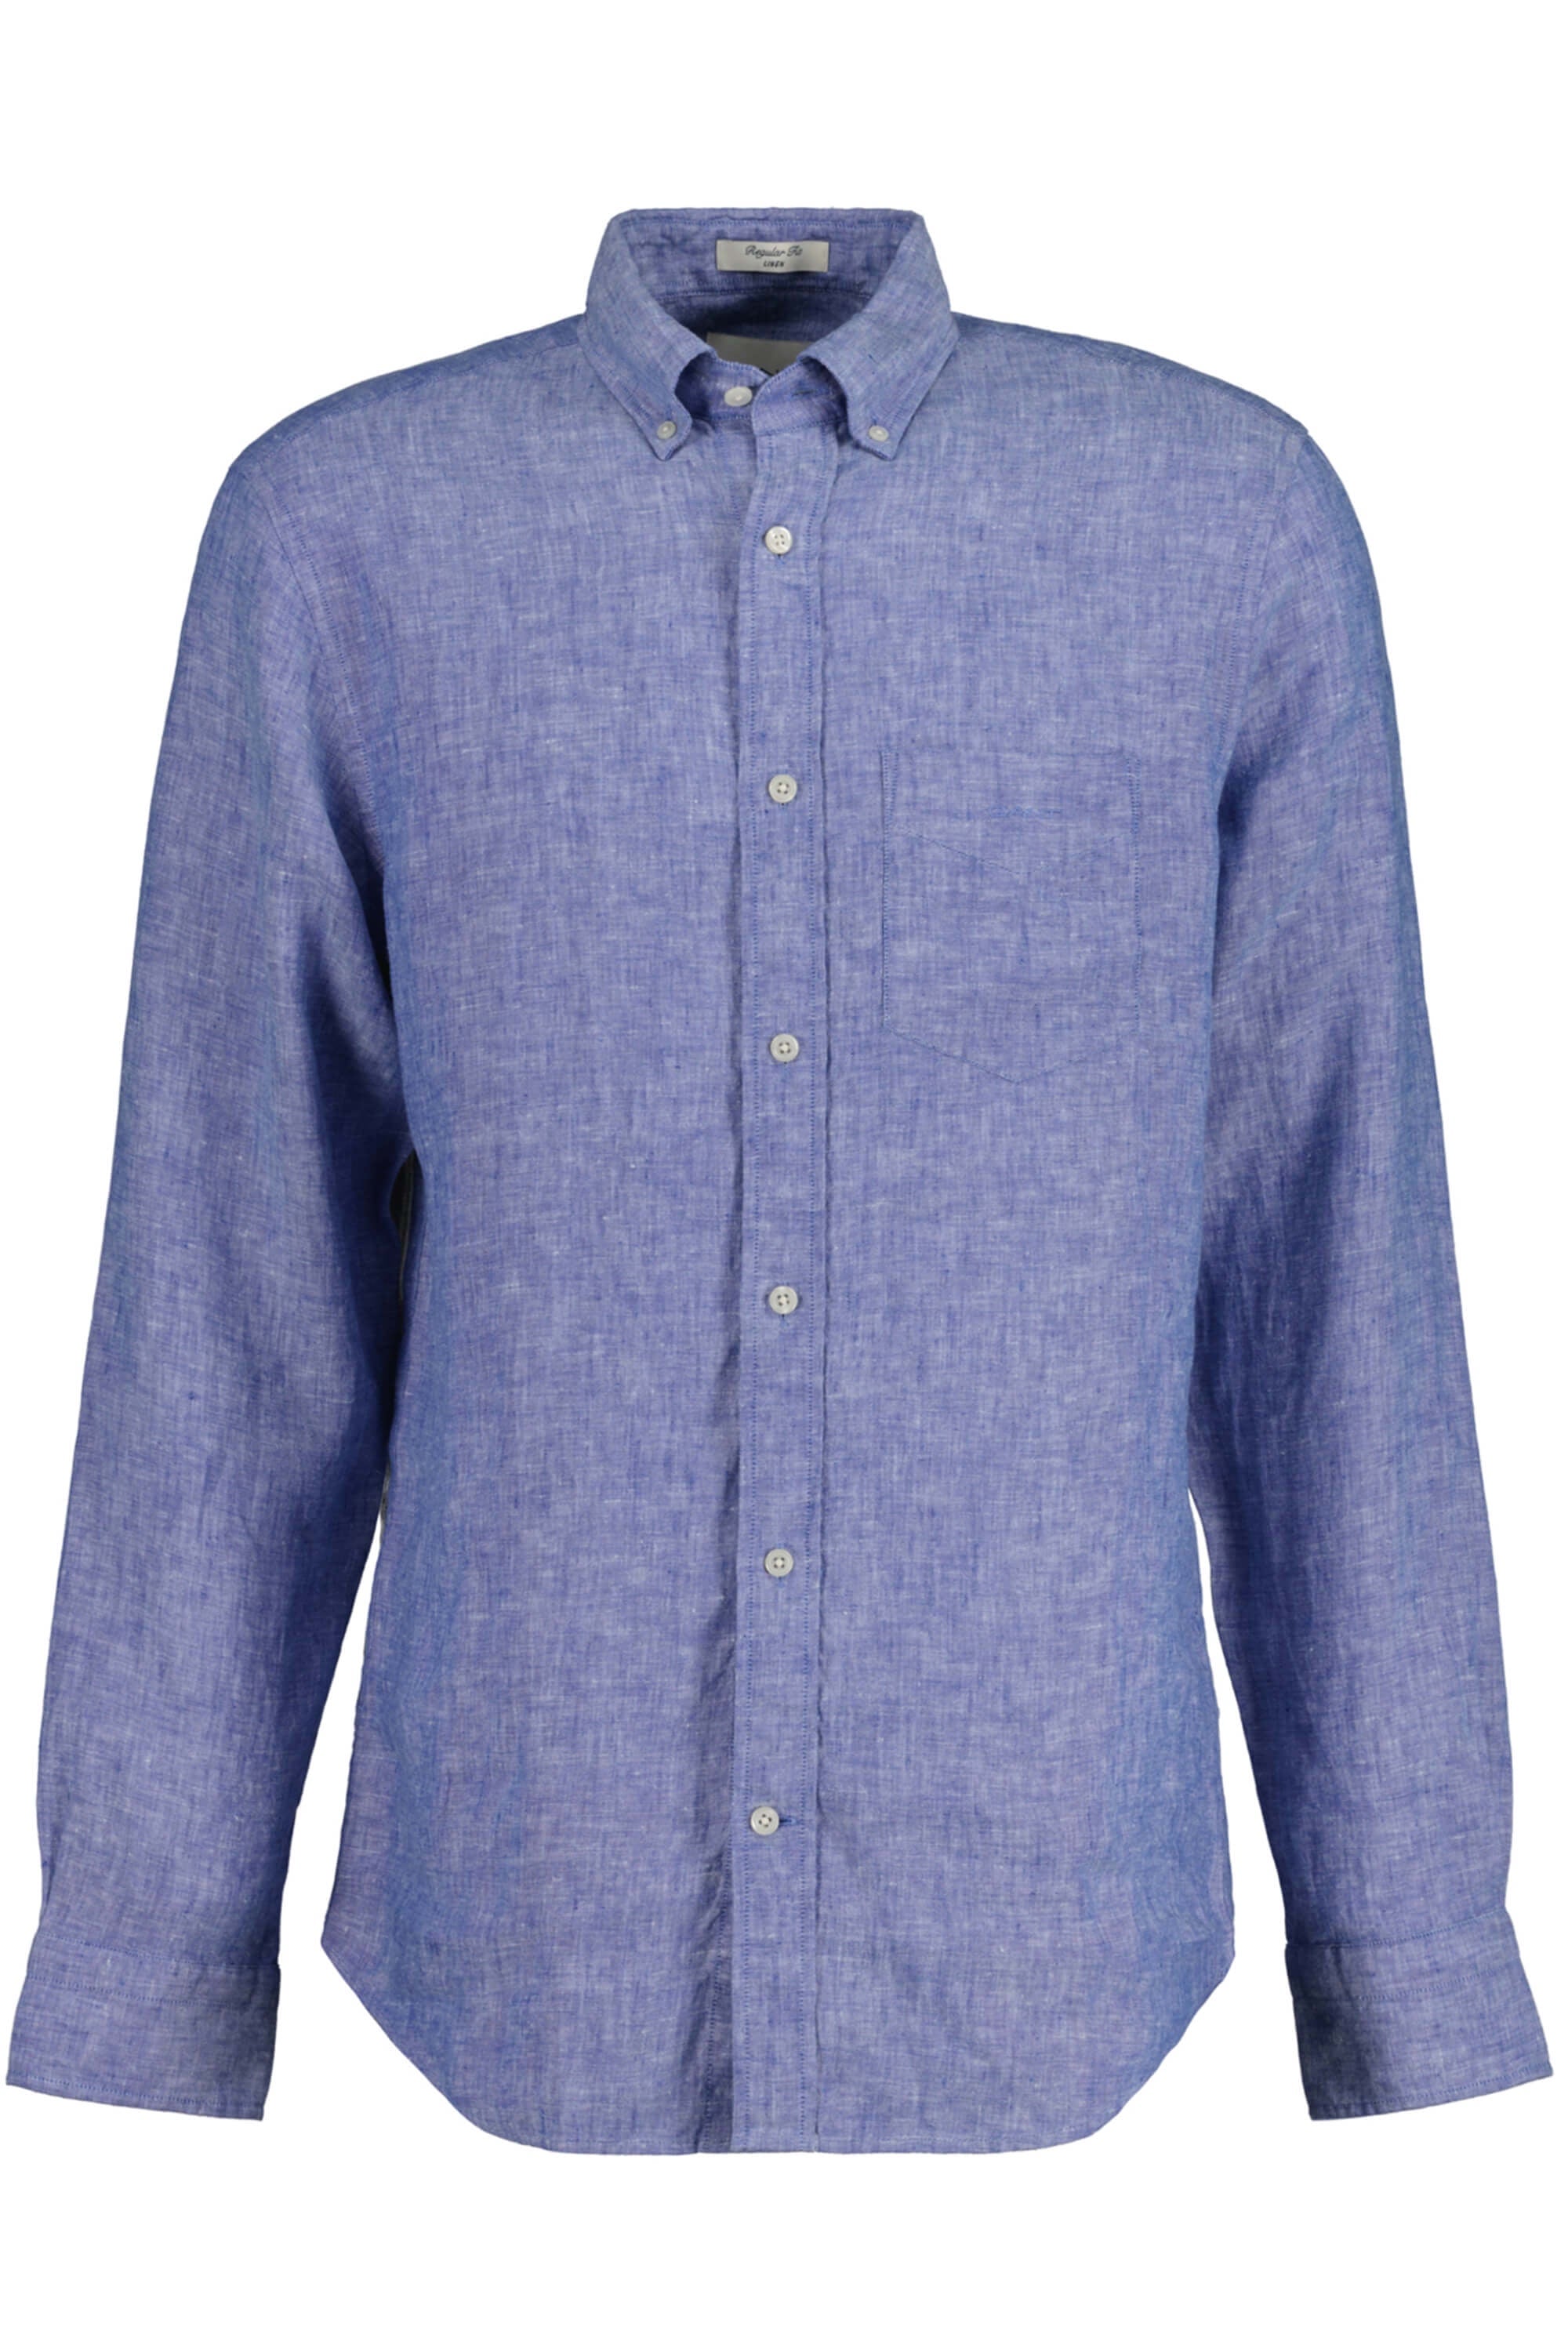 Gant Linen Reg Shirt Rich Blue